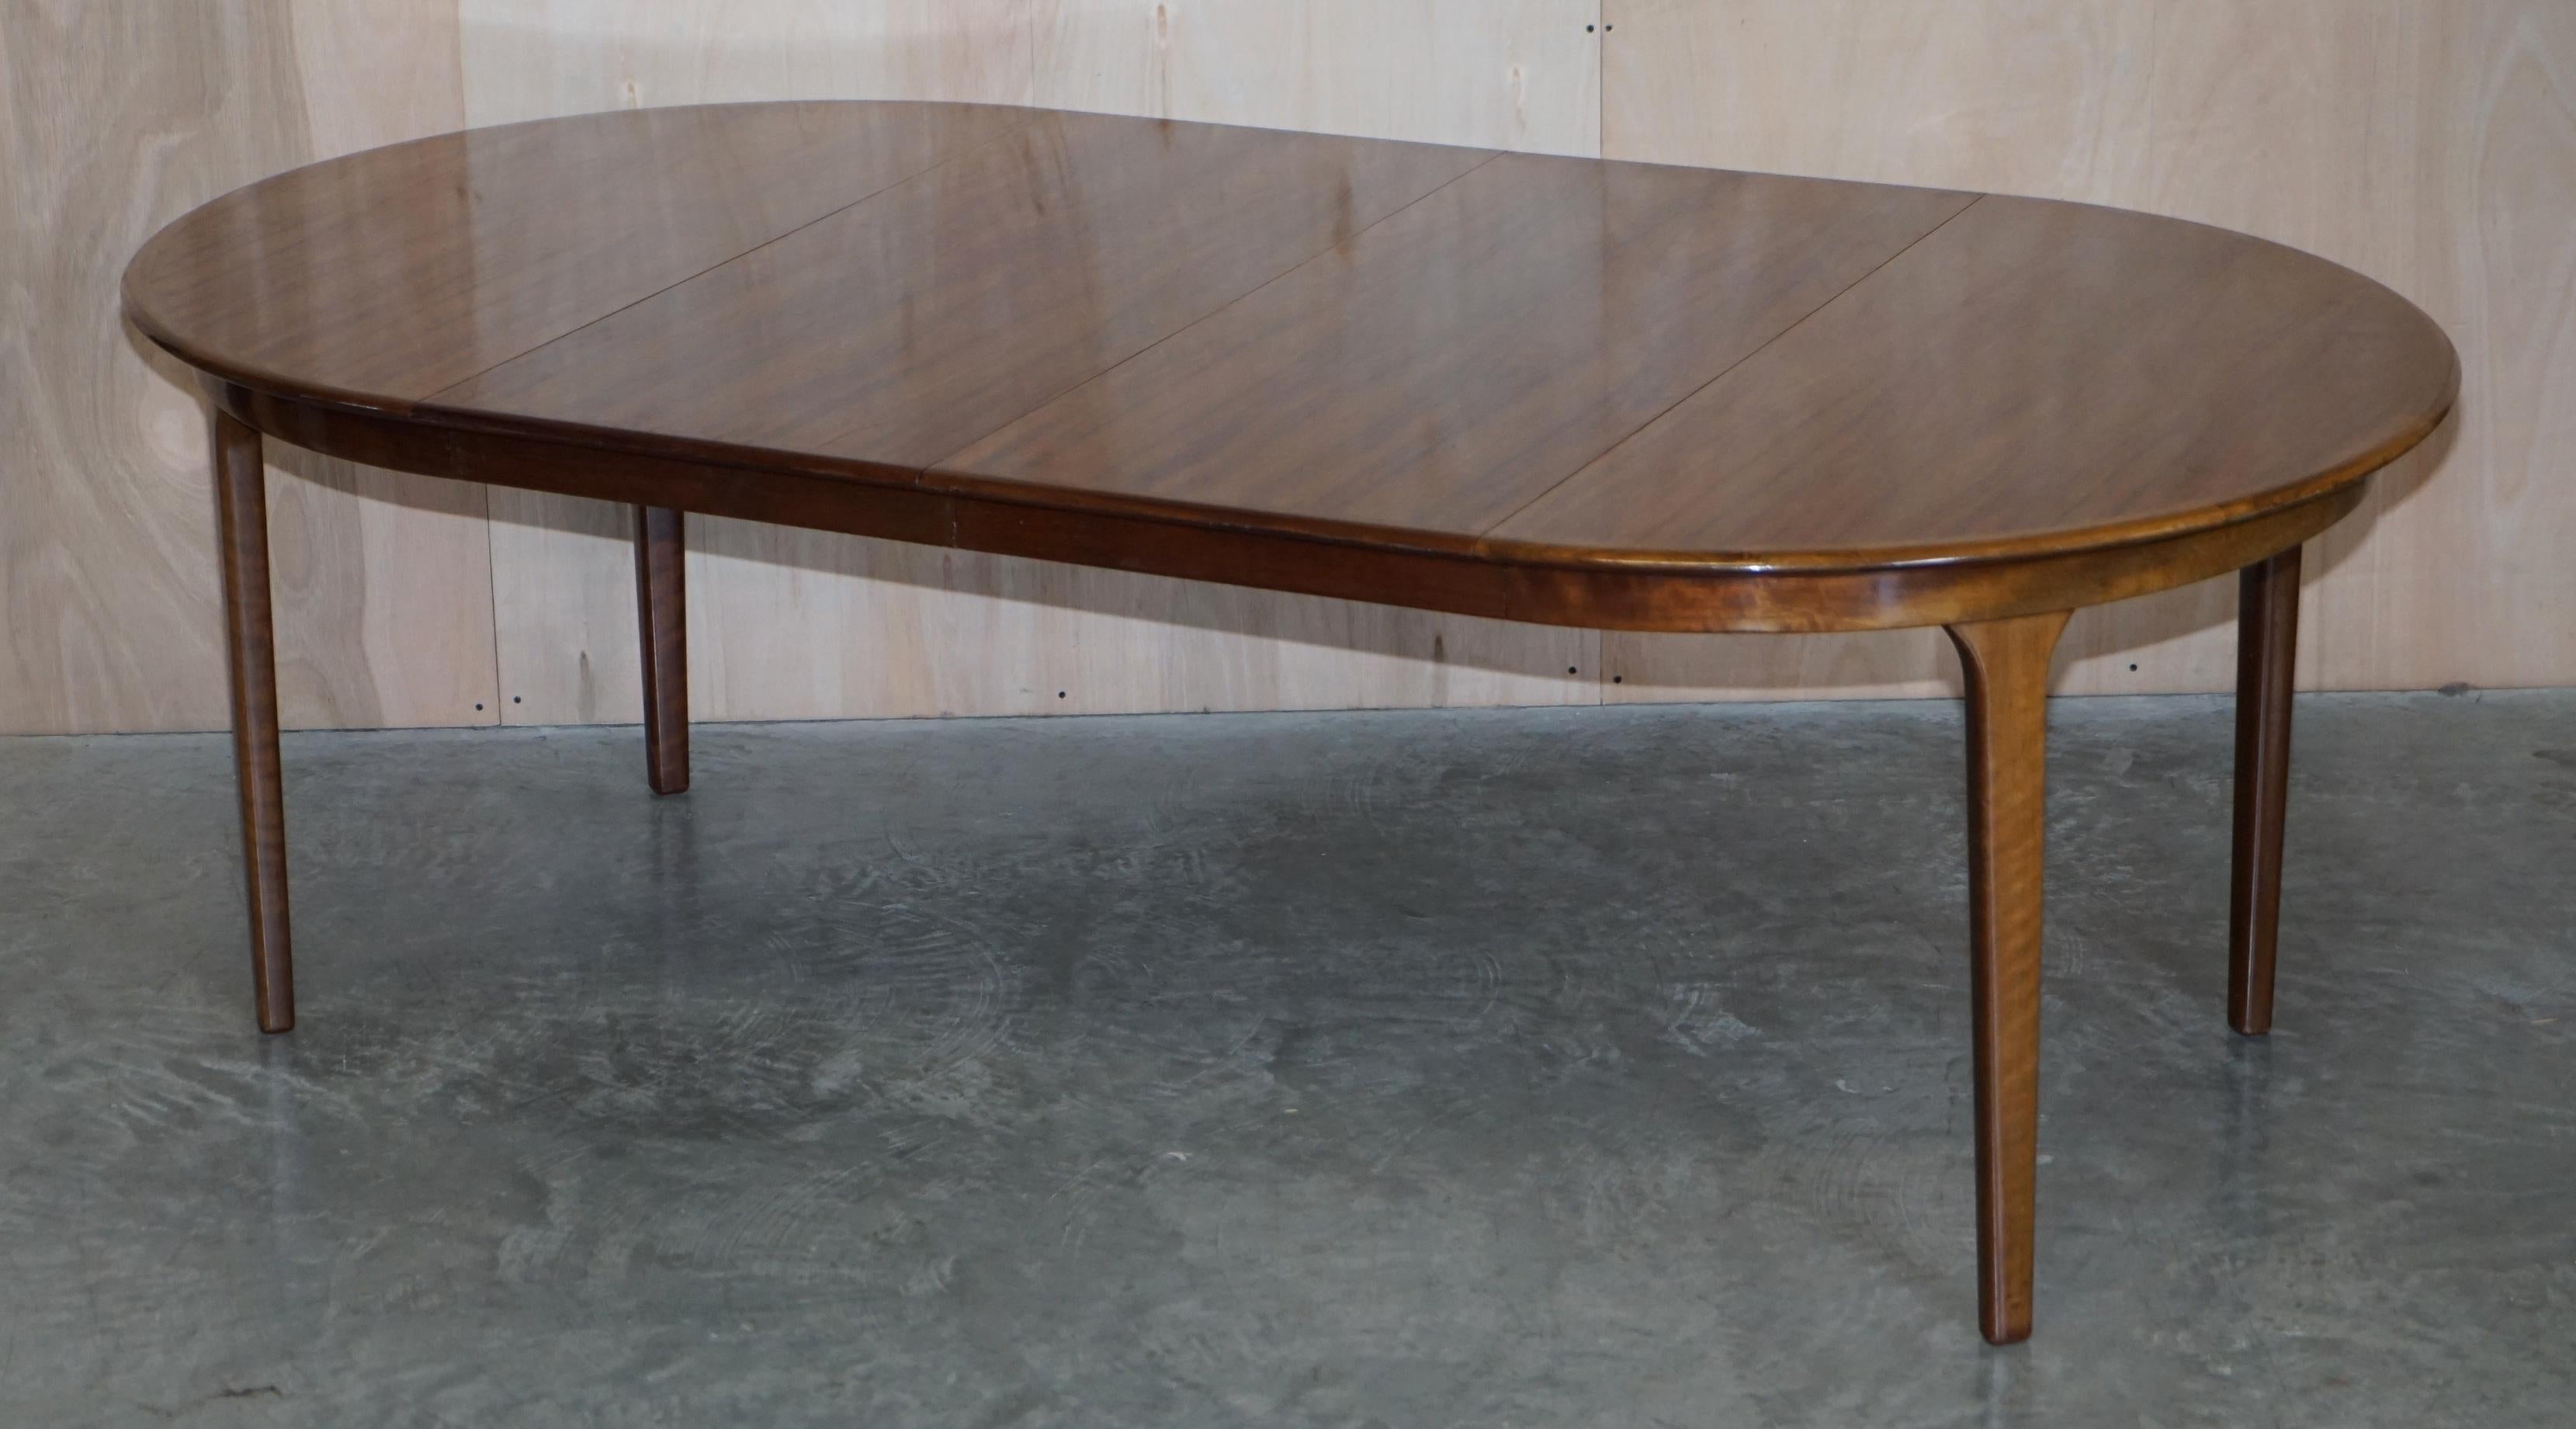 C J Rosengaard Danish Hardwood Mid Century Modern Extending Dining Table 6-10 For Sale 8